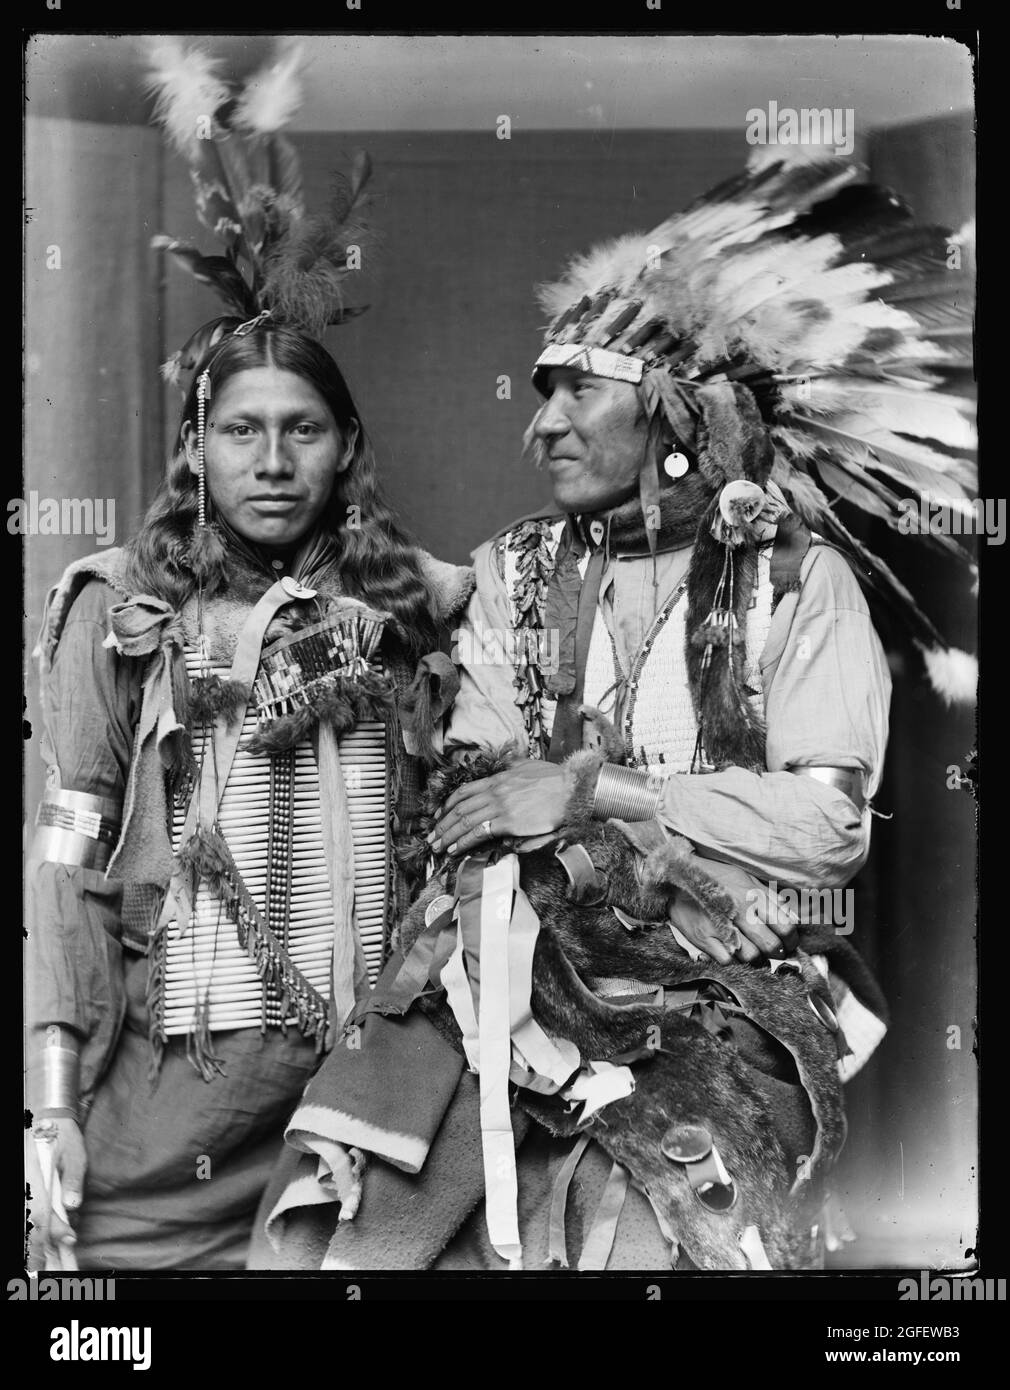 Heilige Fro- Links und große Rüben, indianer/Indianer. Wahrscheinlich Mitglieder der Buffalo Bill's Wild West Show. C 1900. Stockfoto